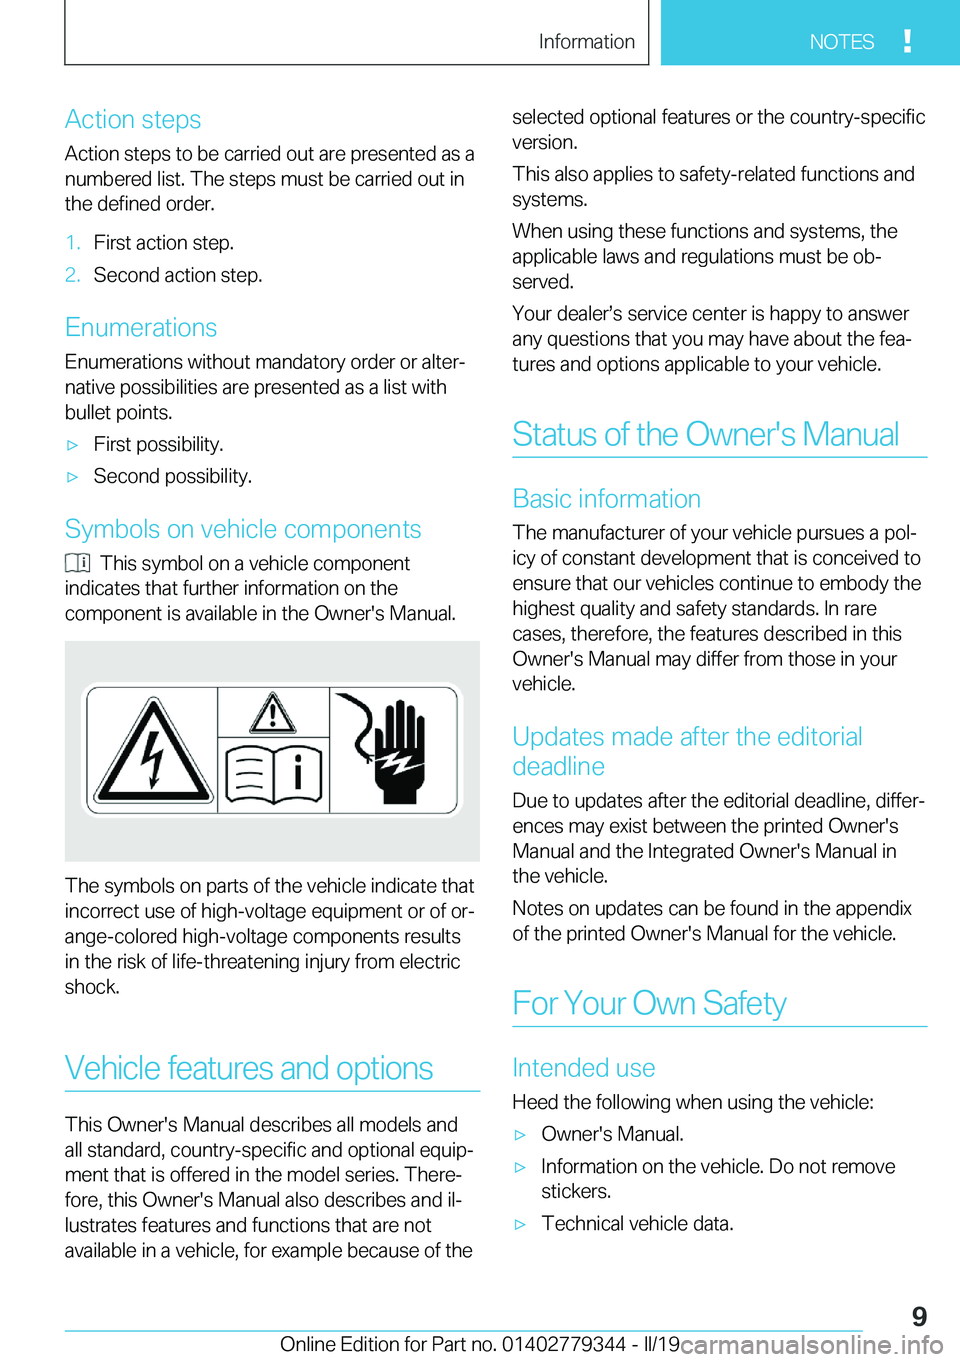 BMW I3 2019  Owners Manual �A�c�t�i�o�n��s�t�e�p�s
�A�c�t�i�o�n��s�t�e�p�s��t�o��b�e��c�a�r�r�i�e�d��o�u�t��a�r�e��p�r�e�s�e�n�t�e�d��a�s��a
�n�u�m�b�e�r�e�d��l�i�s�t�.��T�h�e��s�t�e�p�s��m�u�s�t��b�e��c�a�r�r�i